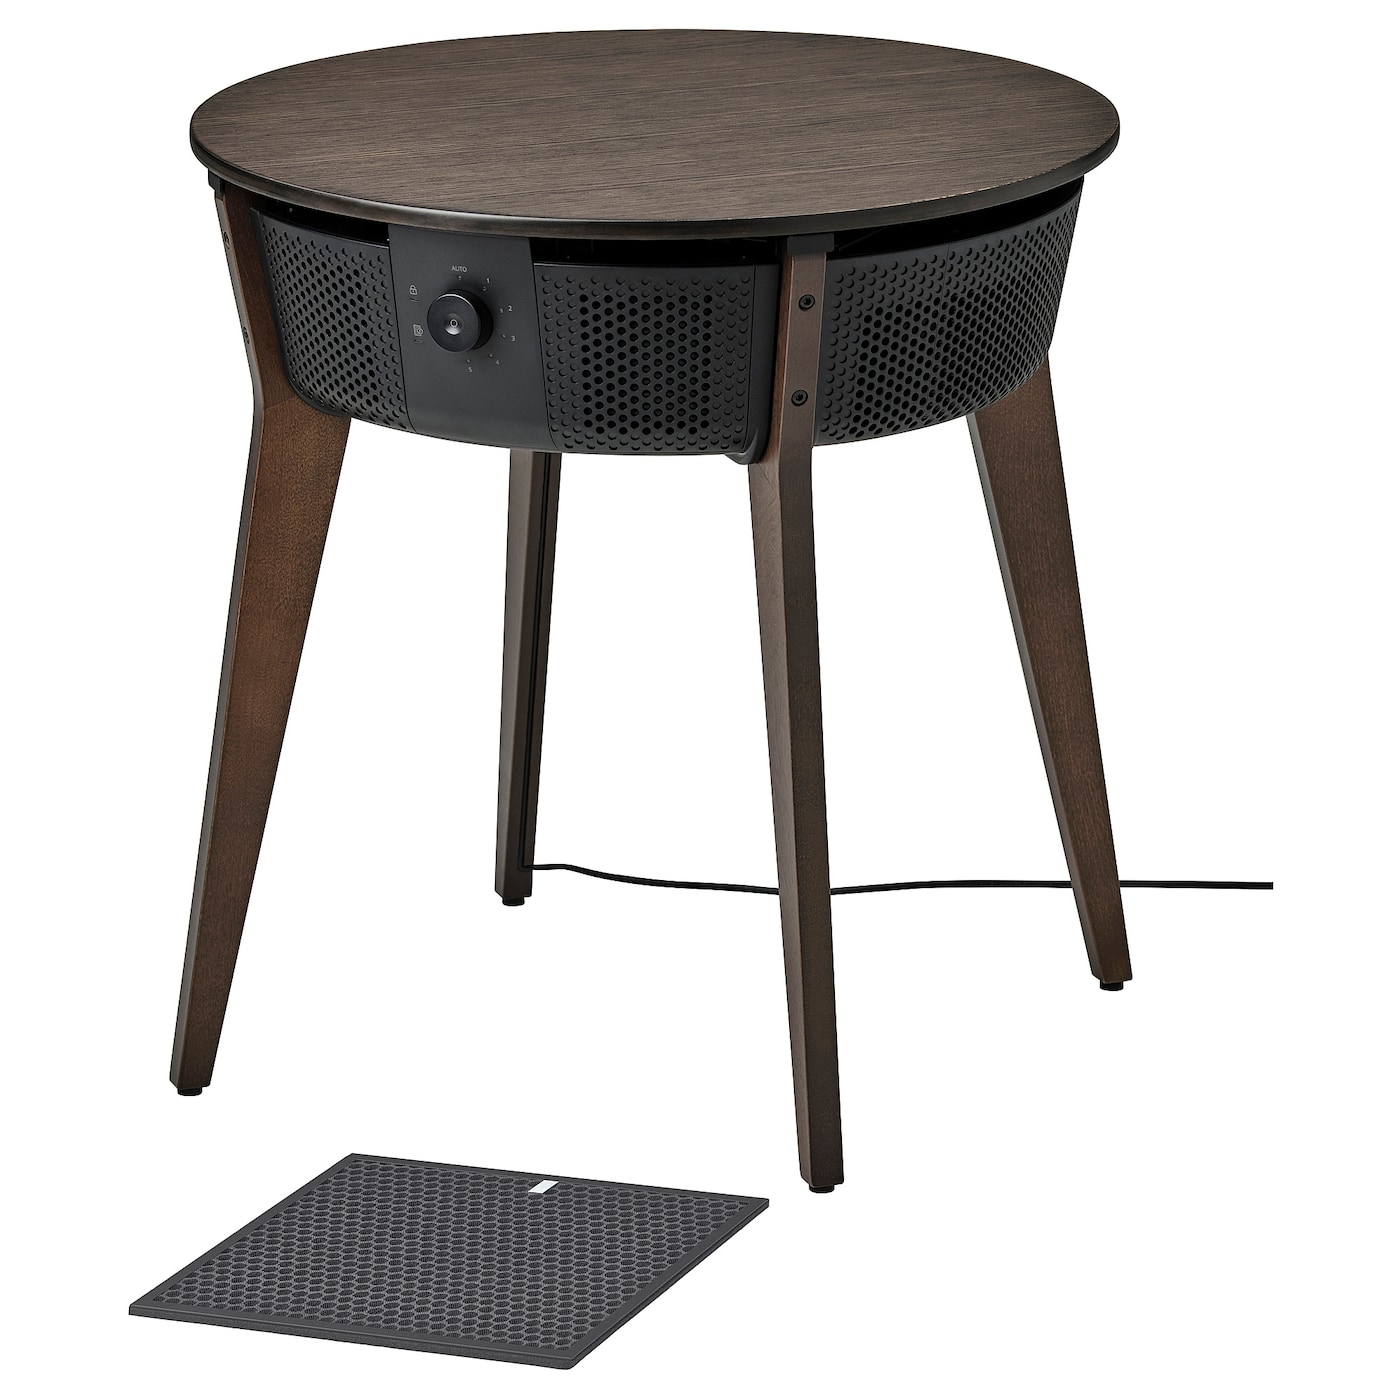 Стол с очистителем воздуха со сменным фильтром - IKEA STARKVIND, 56х56 см, темно-коричневый, СТАРКВИНД ИКЕА